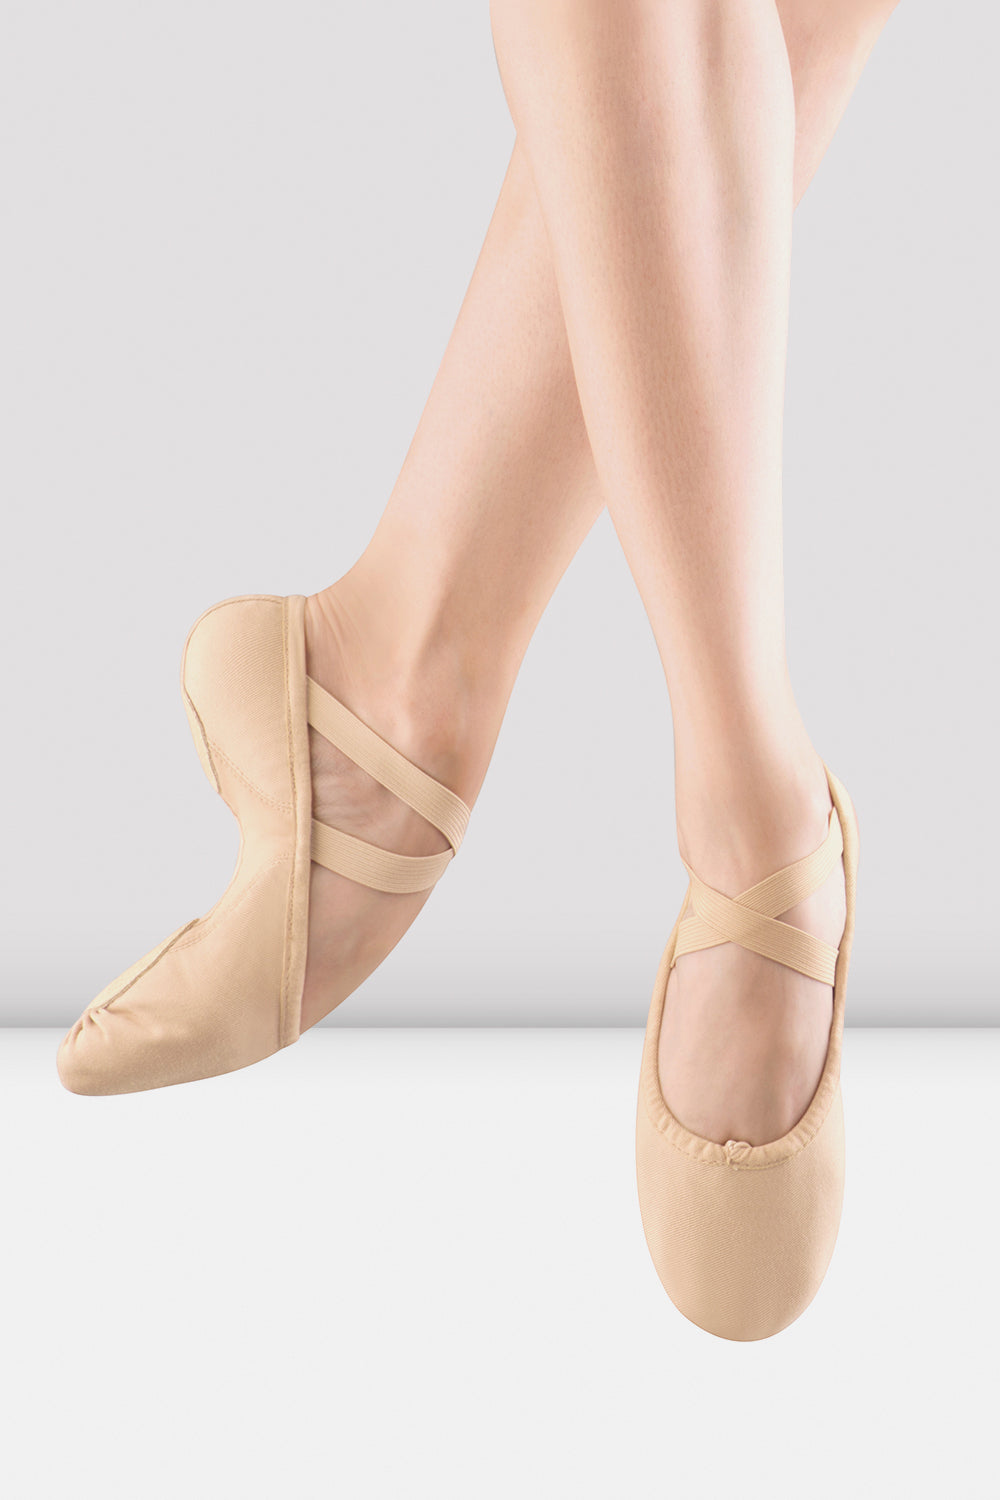 BLOCH Ladies Proflex Canvas Ballet Shoes, Light Sand Canvas